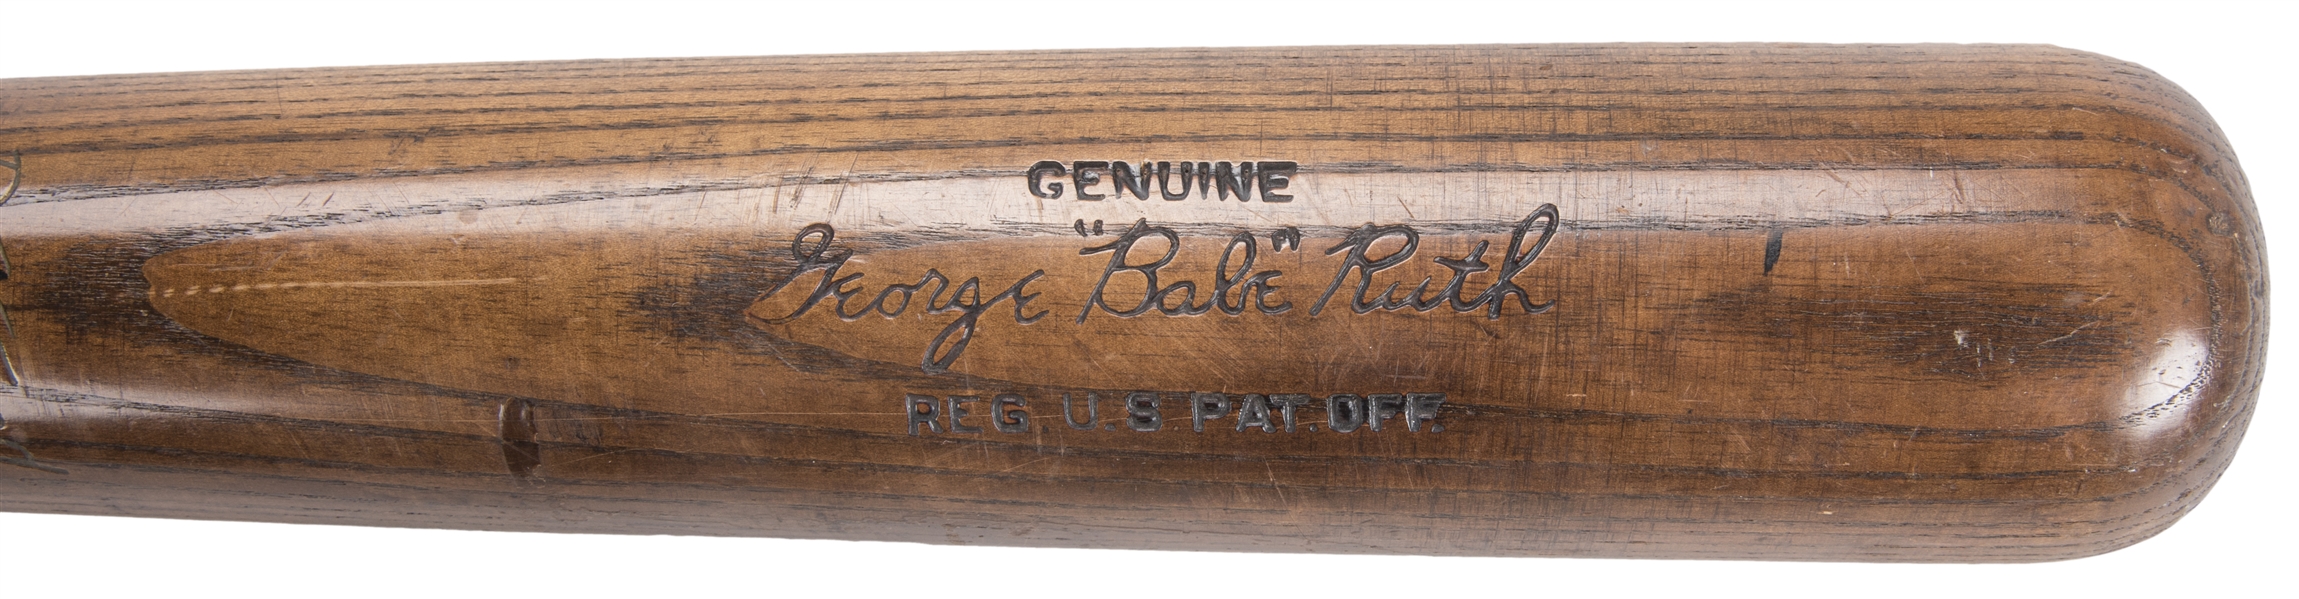 1924 Babe Ruth Signed Bat Brings $253,000